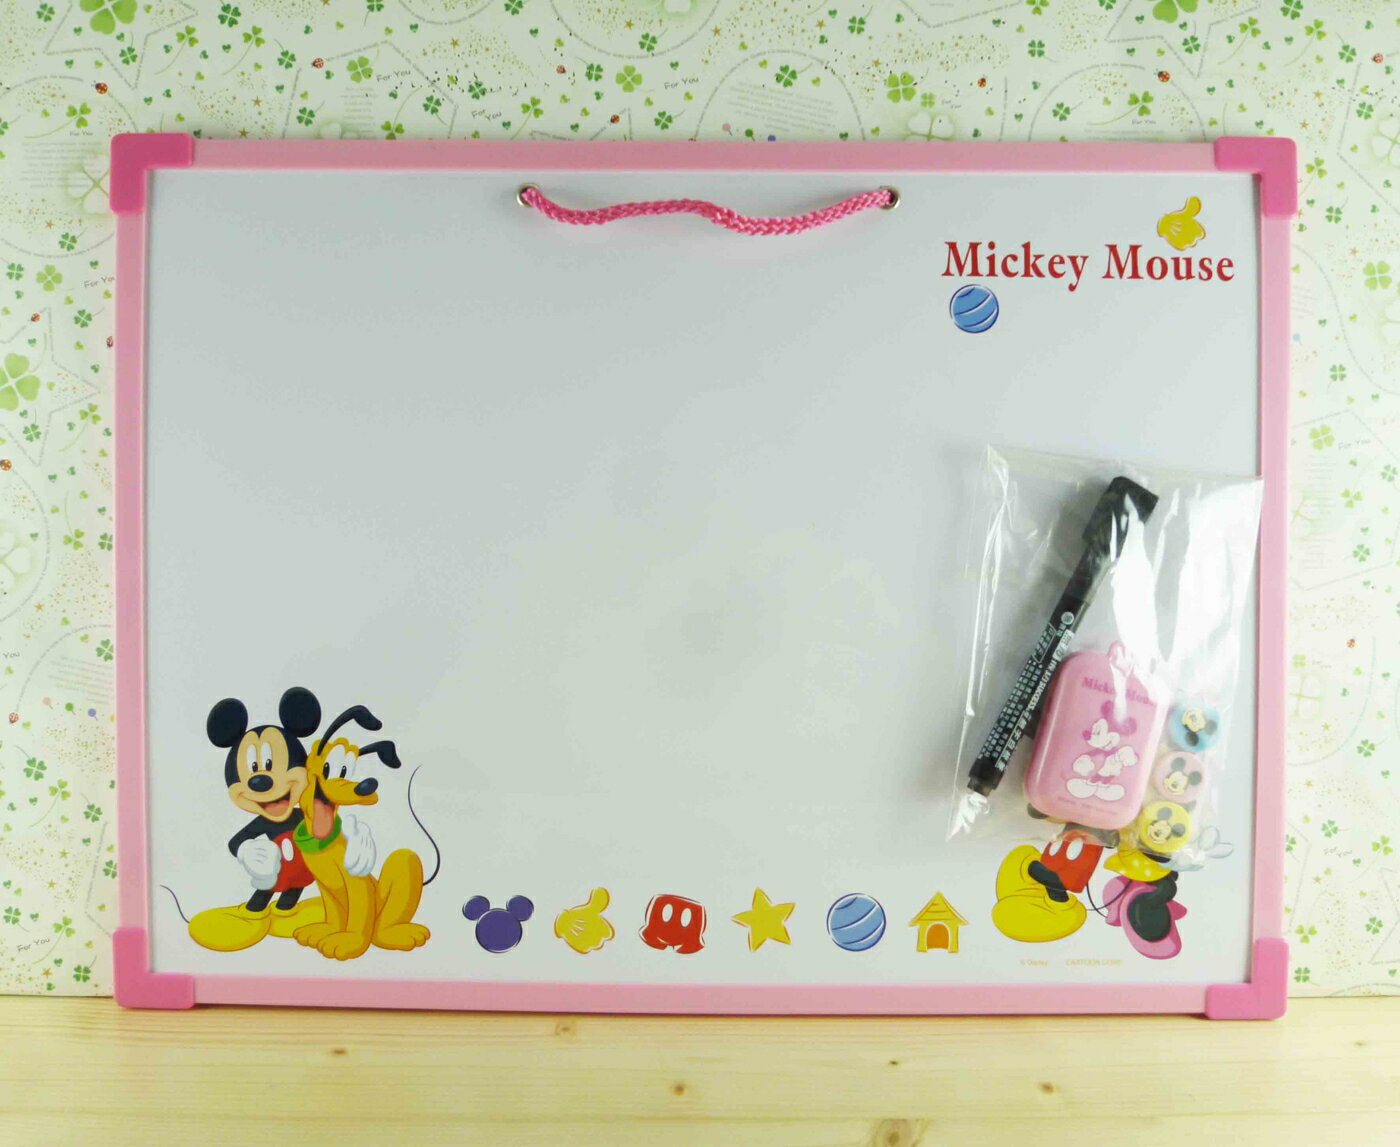 【震撼精品百貨】Micky Mouse 米奇/米妮 白板-粉 震撼日式精品百貨